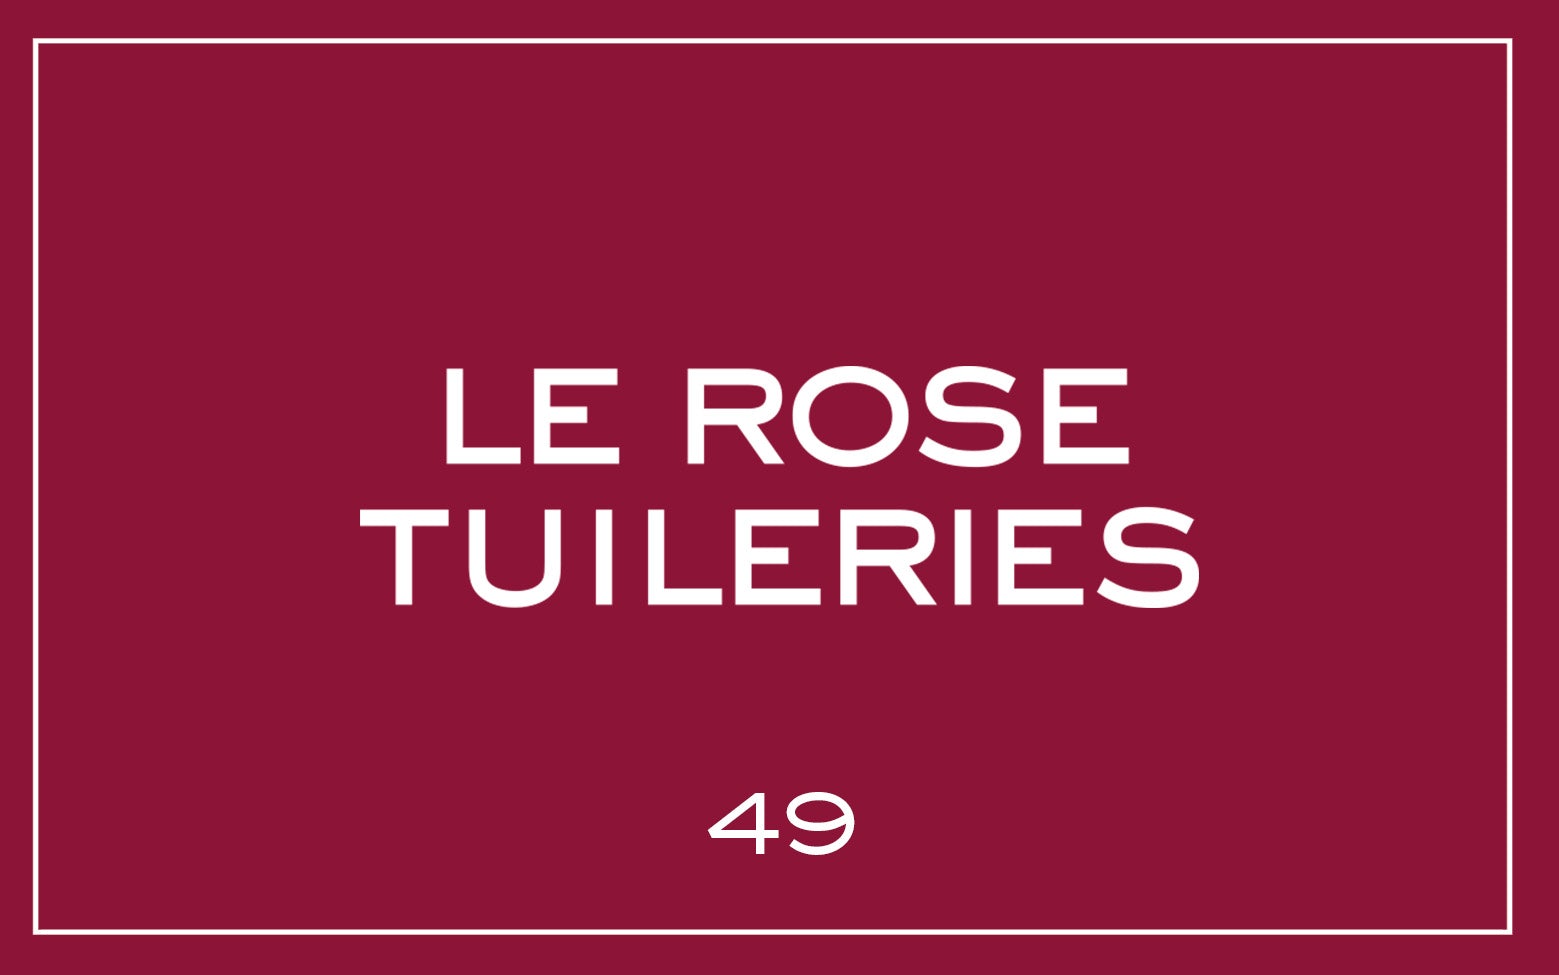 La bouche rouge nuance du rouge à lèvres Le Rose Tuileries avec du texte 